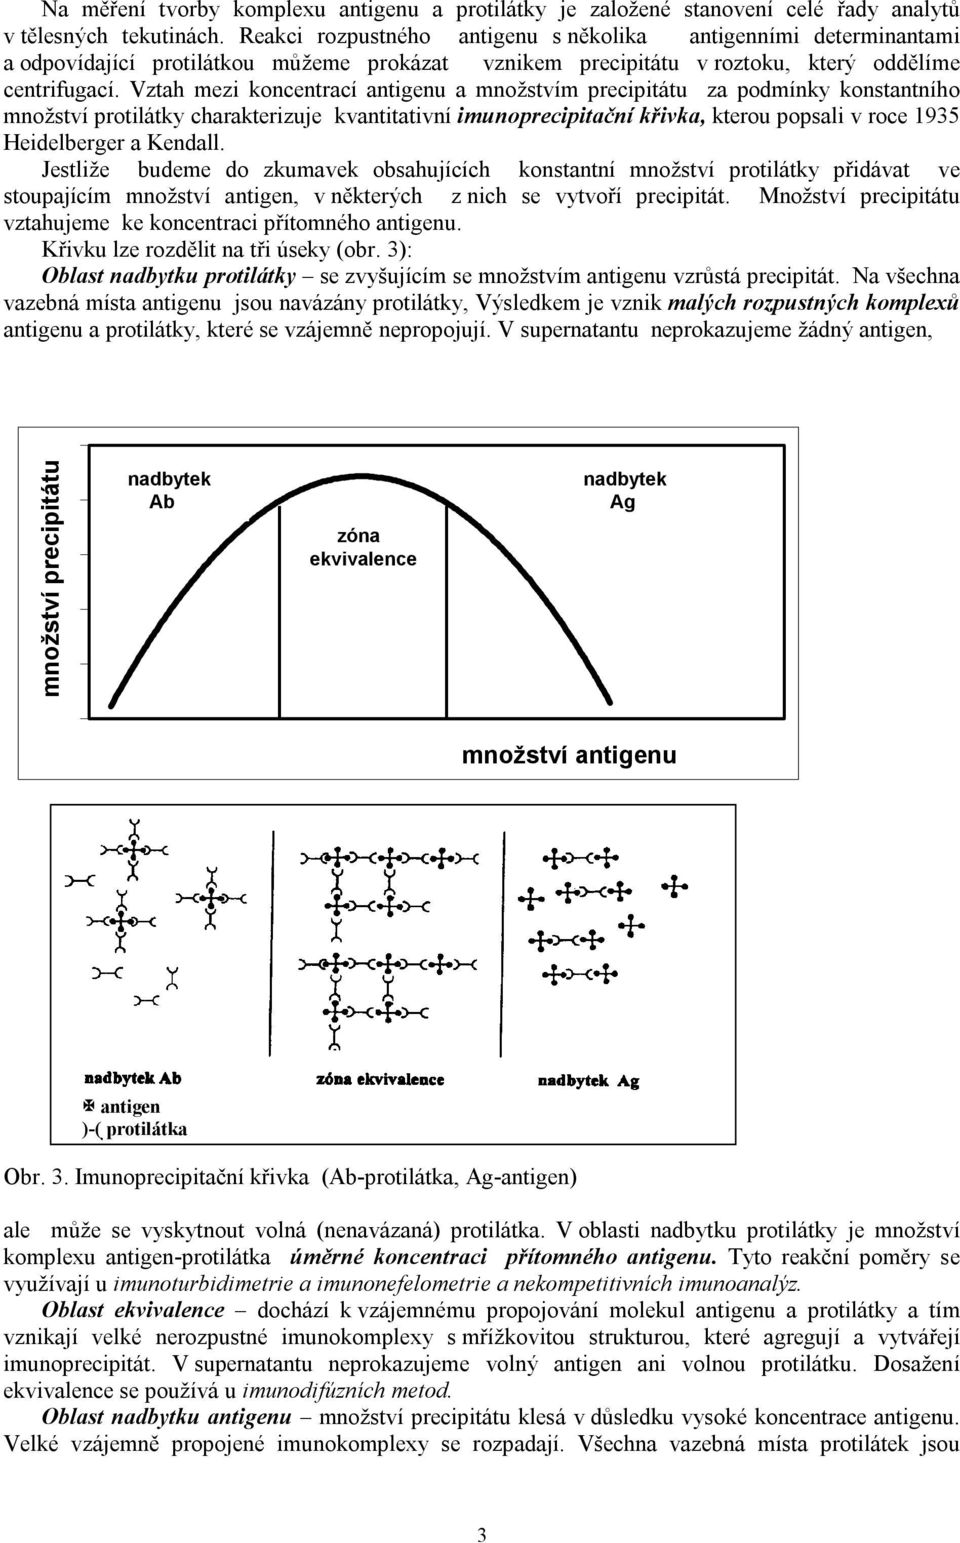 Vztah mezi koncentrací antigenu a množstvím precipitátu za podmínky konstantního množství protilátky charakterizuje kvantitativní imunoprecipitační křivka, kterou popsali v roce 1935 Heidelberger a